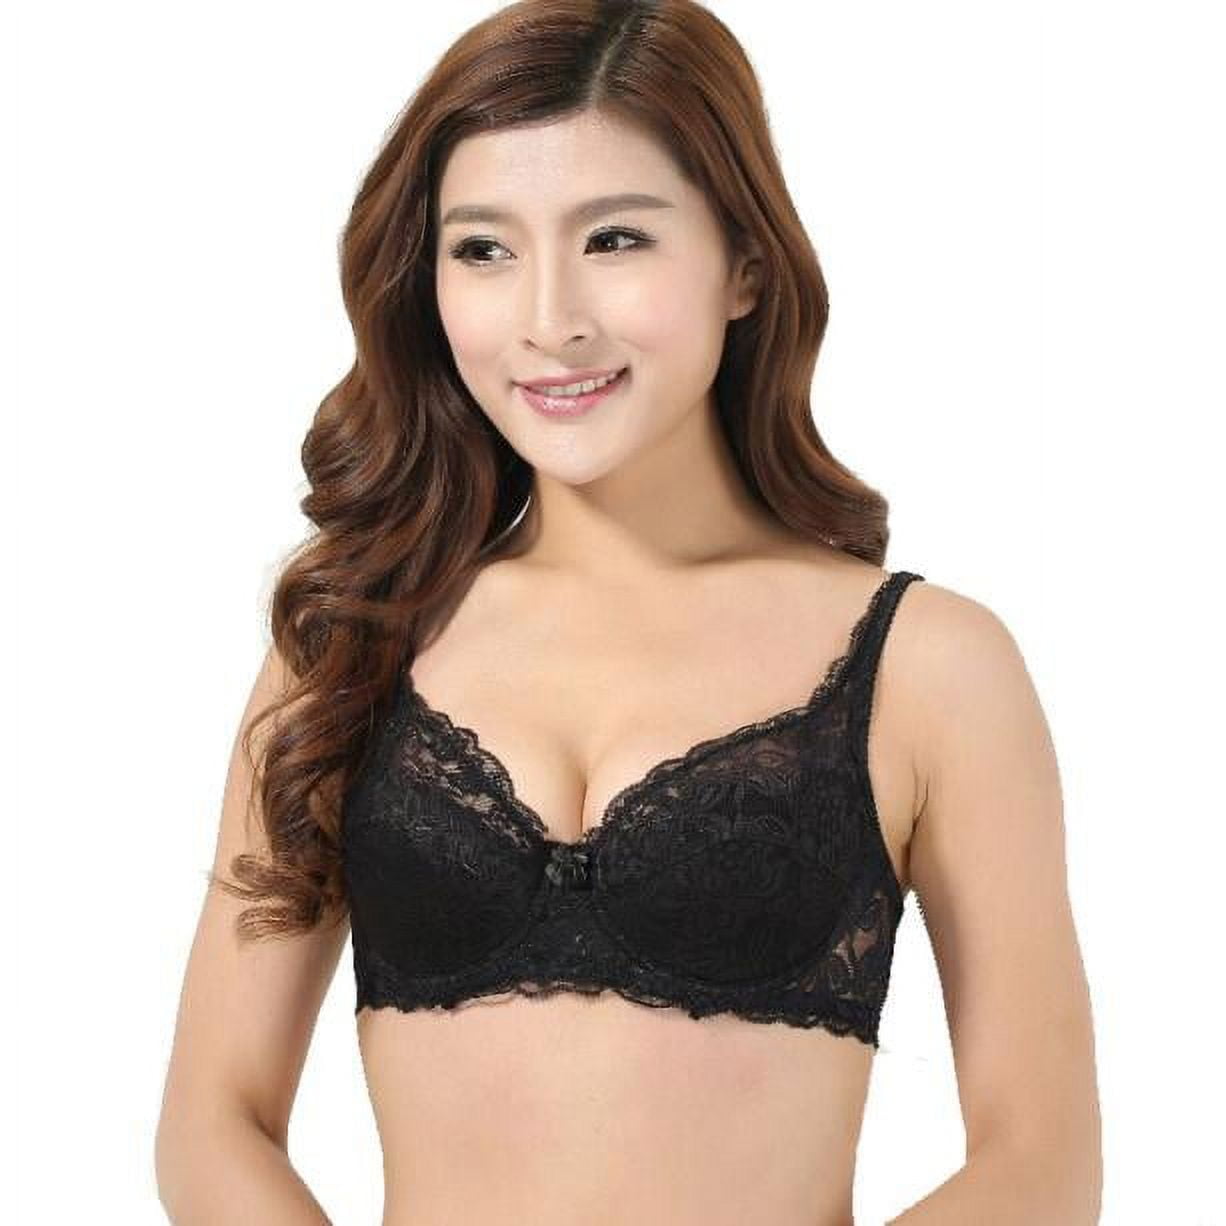 shpwfbe underwear women low cut unlined plu size full bust sheer lace push  up siere thin cup bras for women lingerie for women 